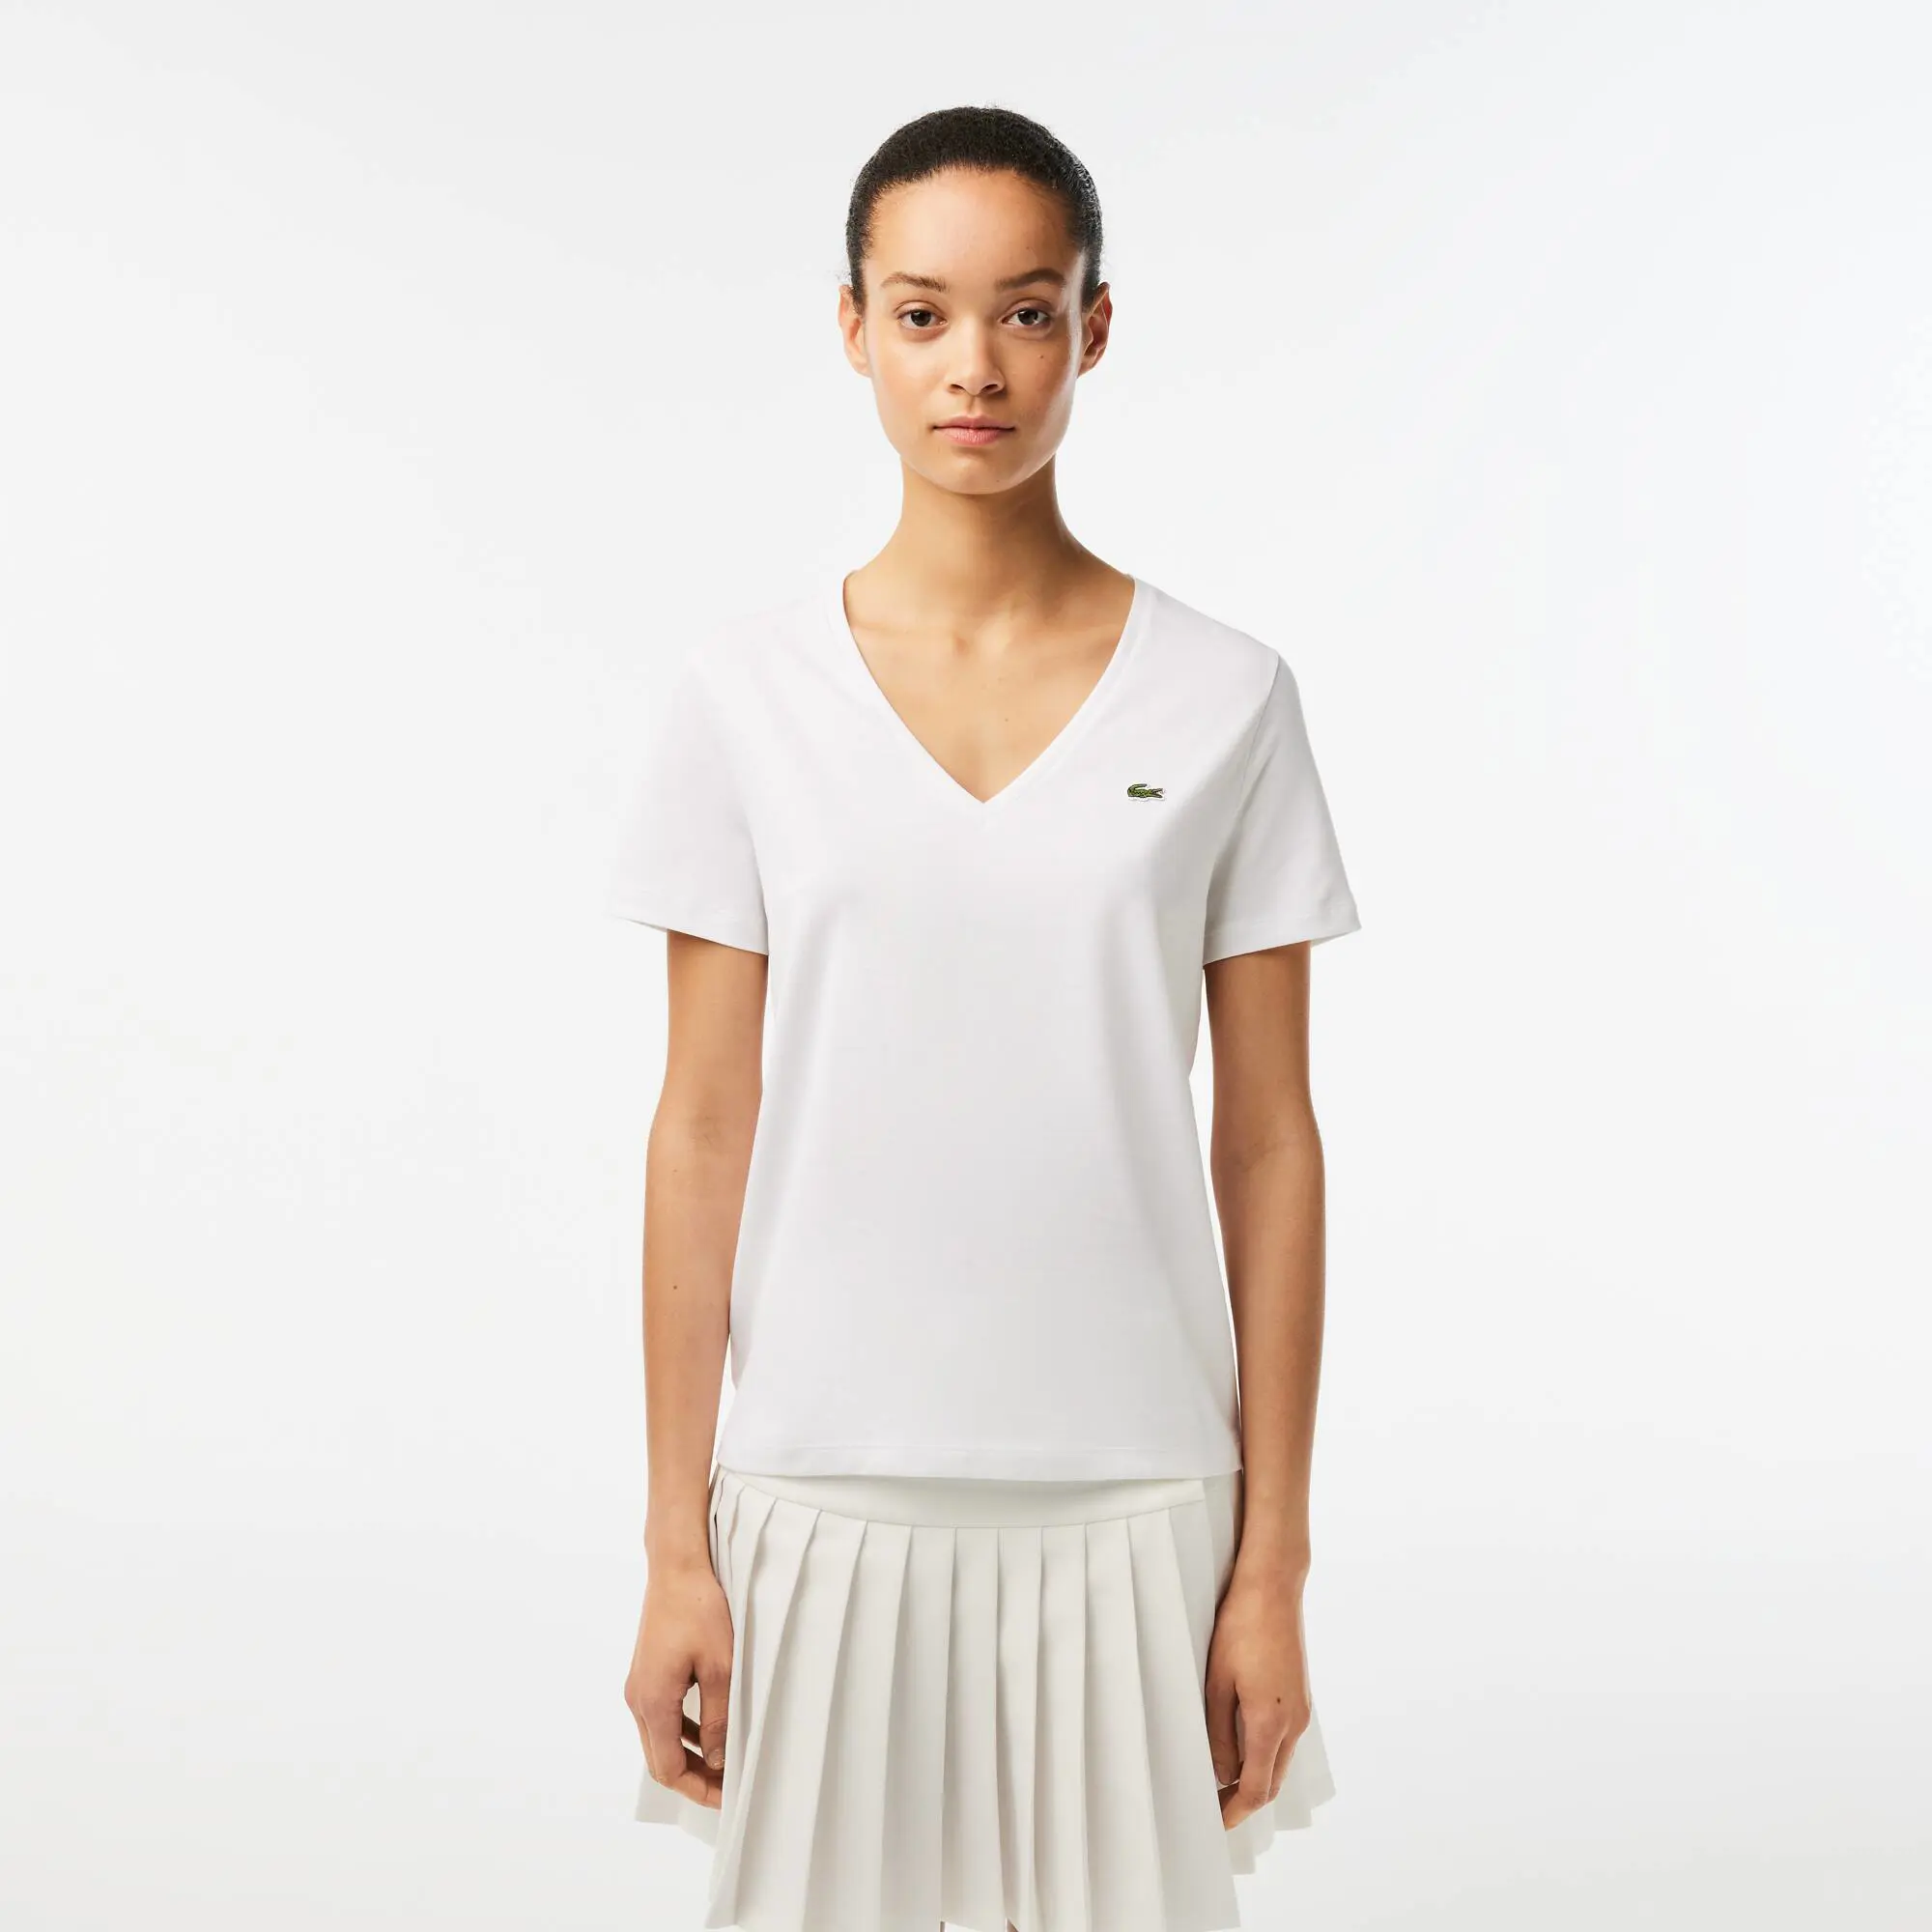 Lacoste Women’s V-neck Loose Fit Cotton T-shirt. 1